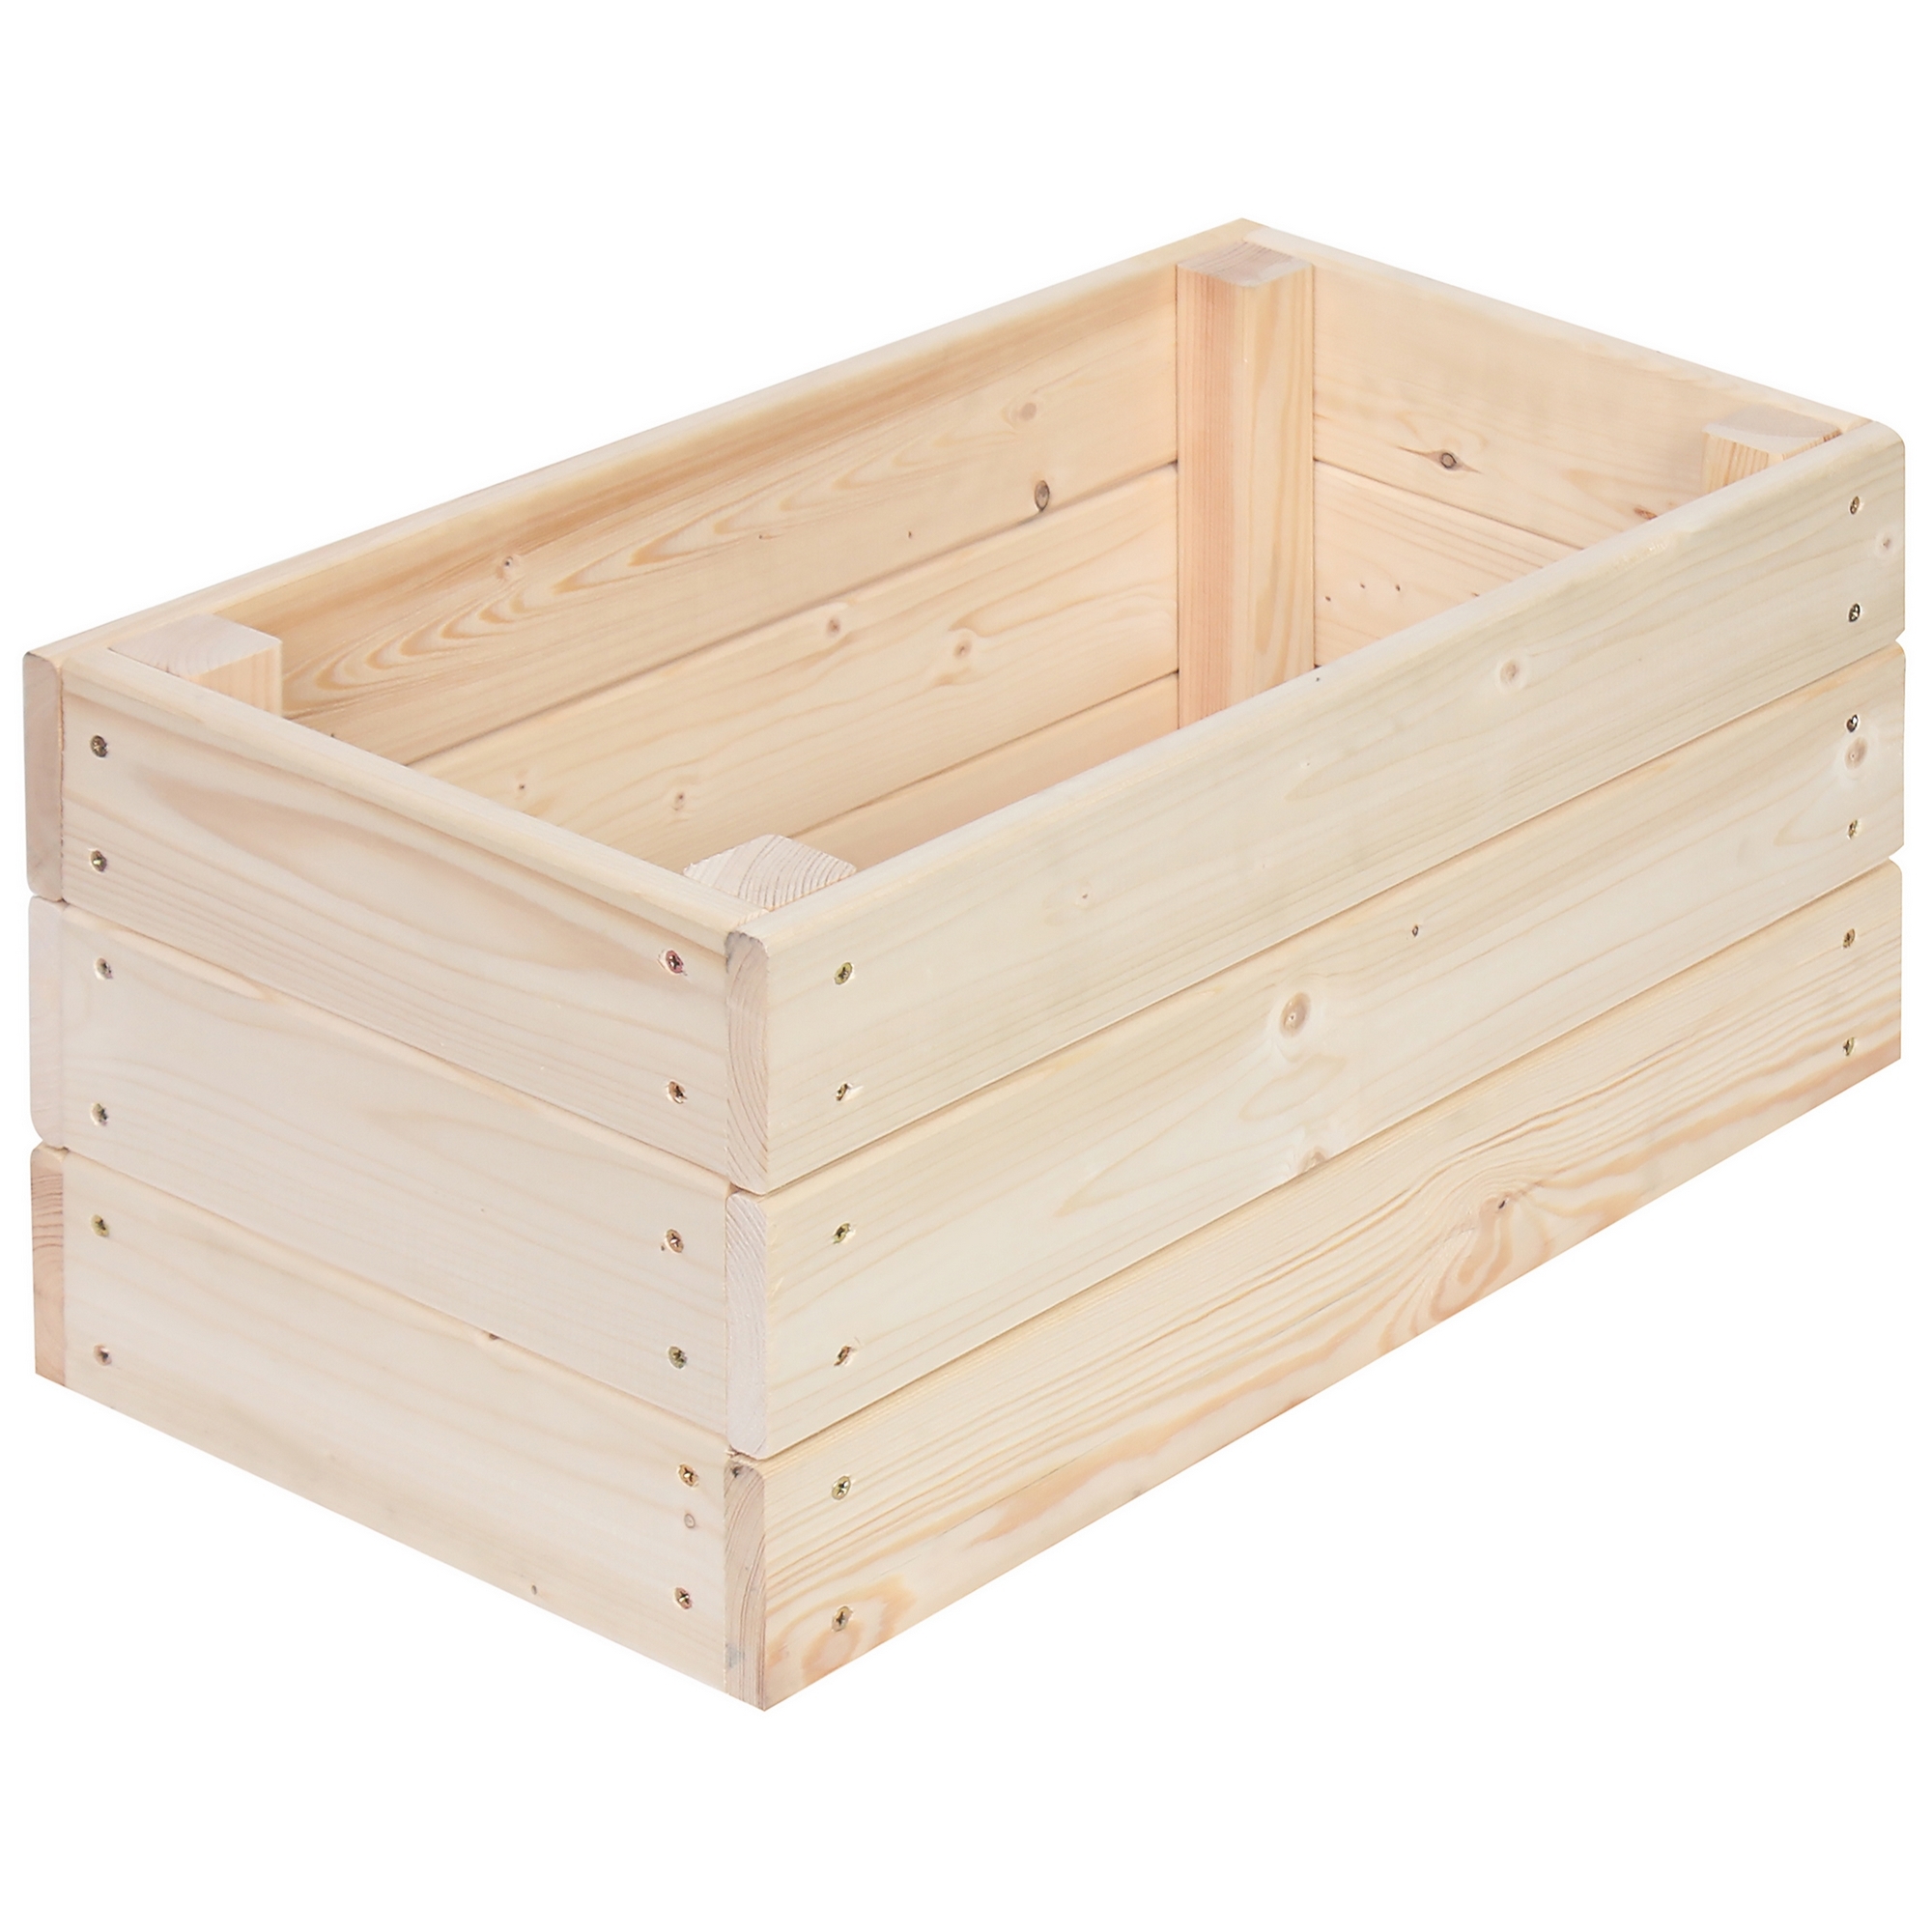 Как сделать деревянный ящик для овощей и фруктов?